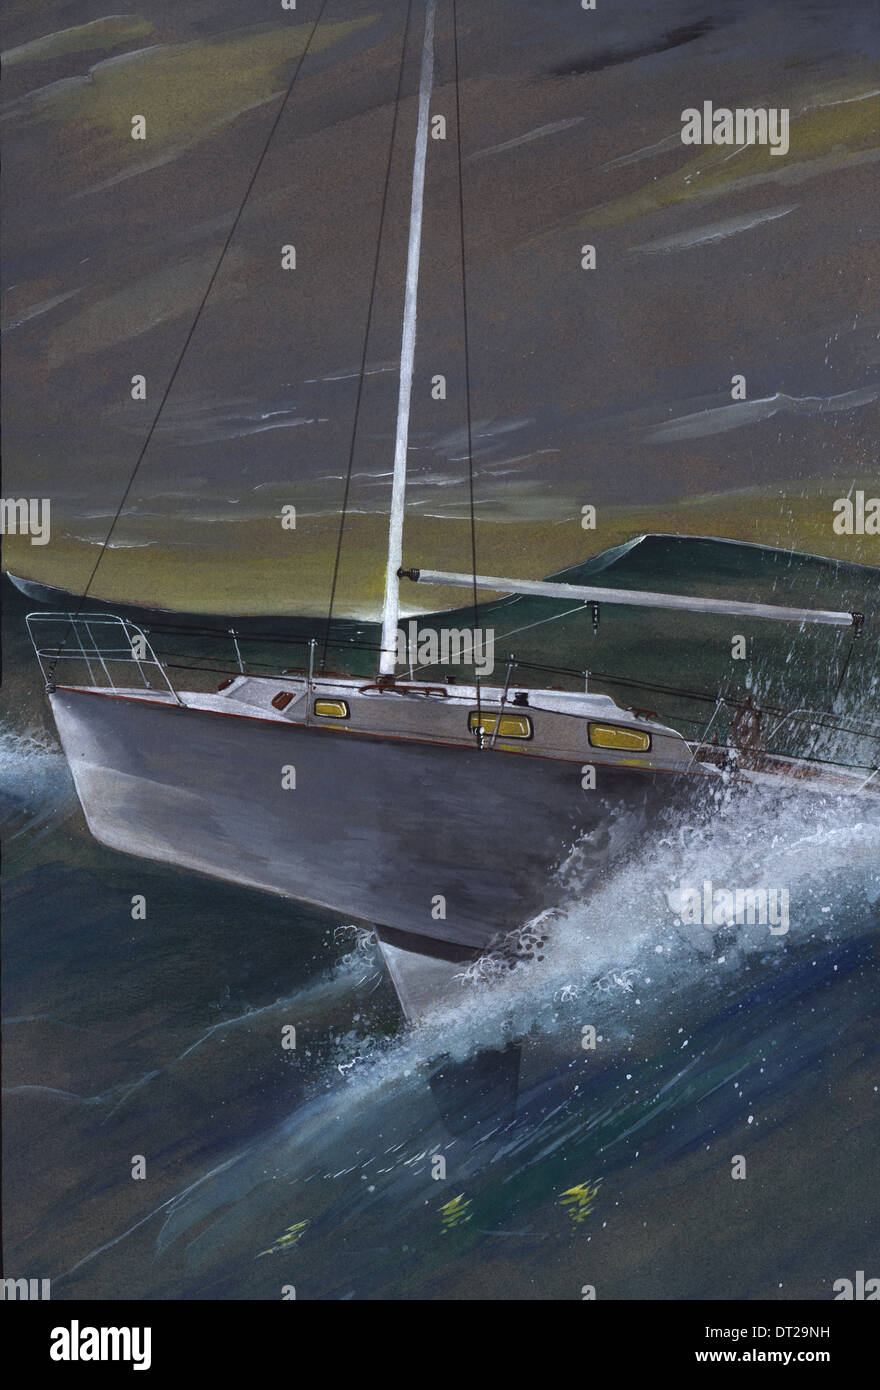 Image d'illustration de bateau à voile sur la mer déchaînée, représentant la conquête de l'adversité Banque D'Images